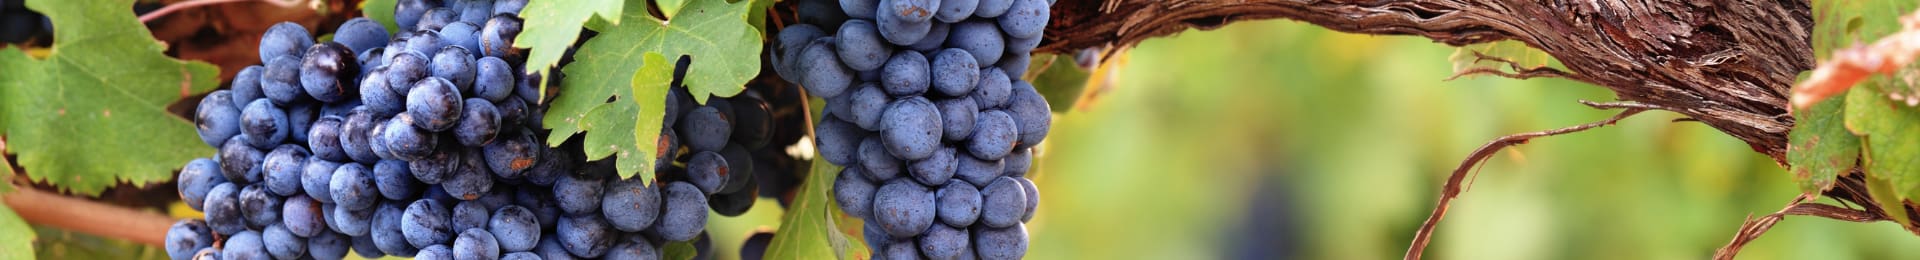 Les vins bio et nature : mthodes et enjeux